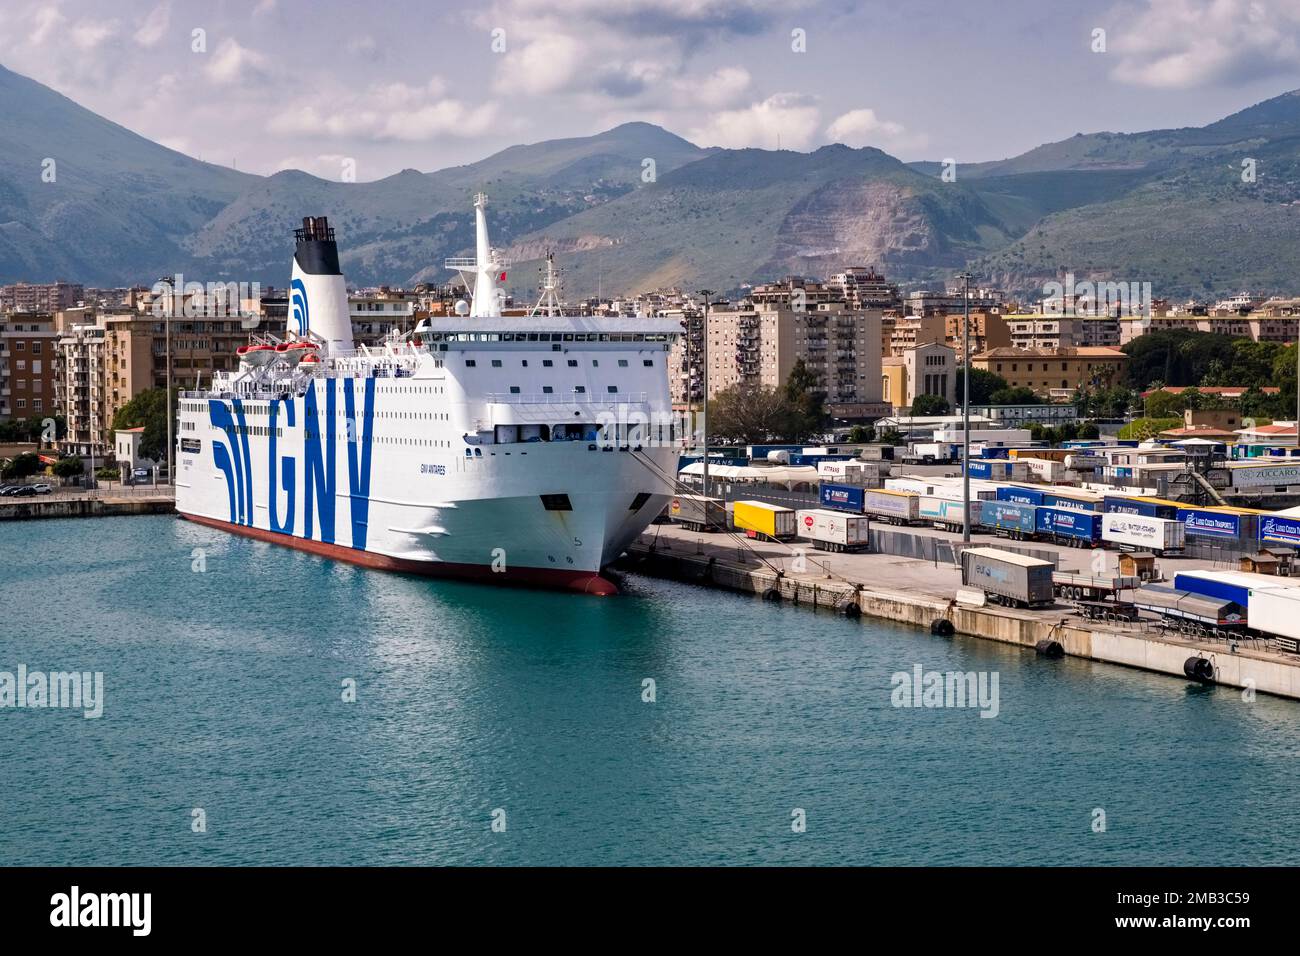 La GNV Antares, una nave da carico passeggeri/Ro-Ro, è ancorata nel porto di Palermo, Porto di Palermo. Foto Stock